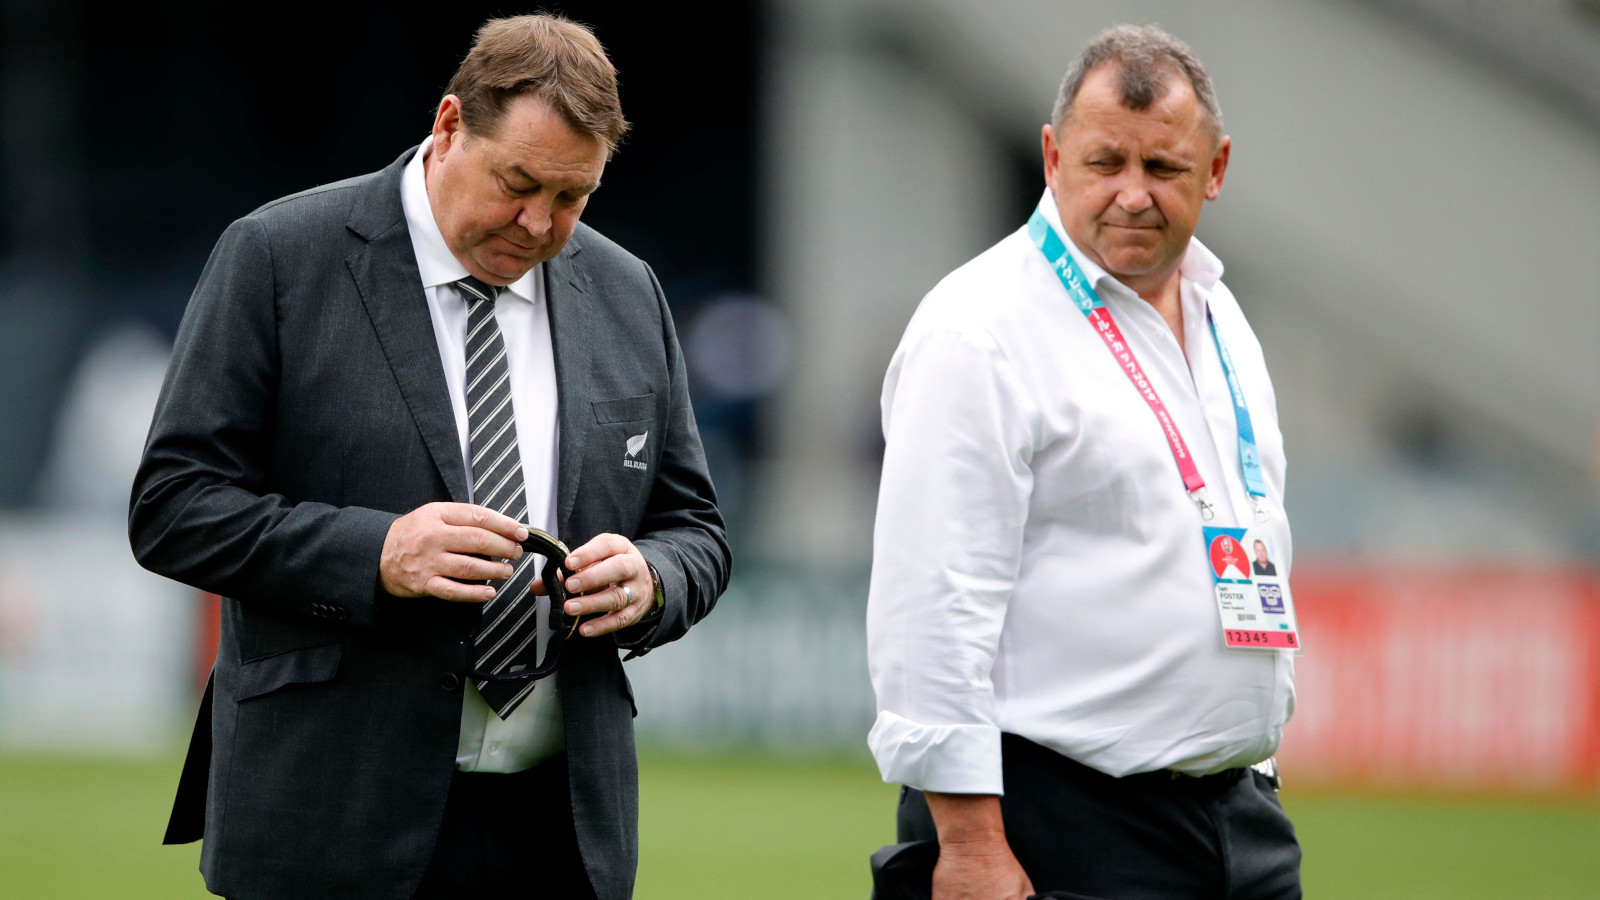 sir steve hansen warns new zealand rugby over scott robertson after ian foster ‘treatment’